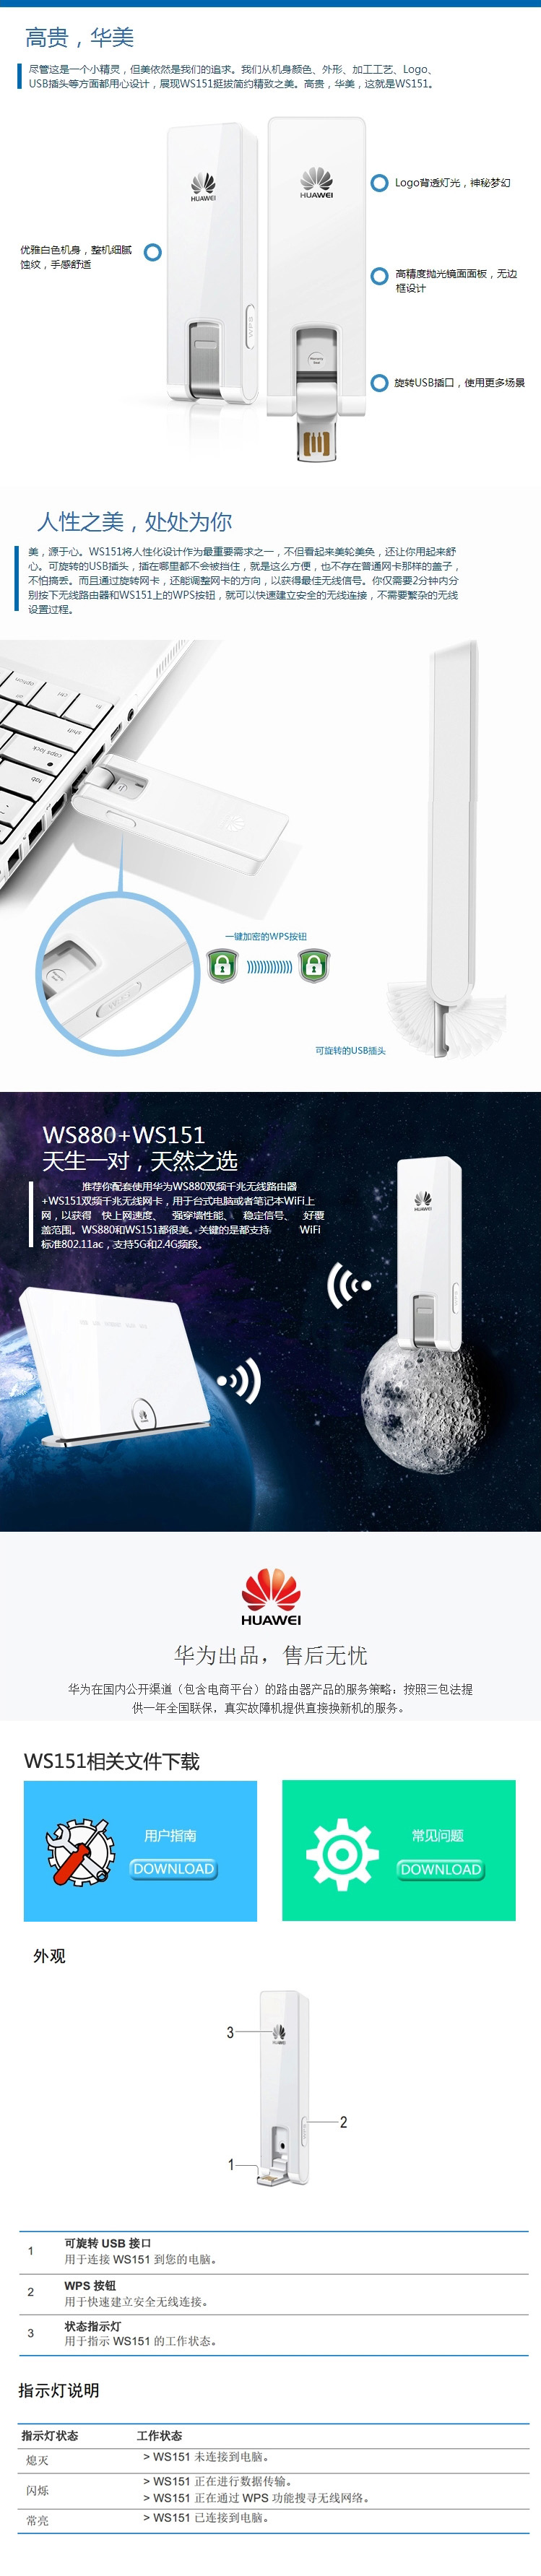 【12.12买就送】华为 WS151 双频千兆无线网卡 无线接收器 原装正品